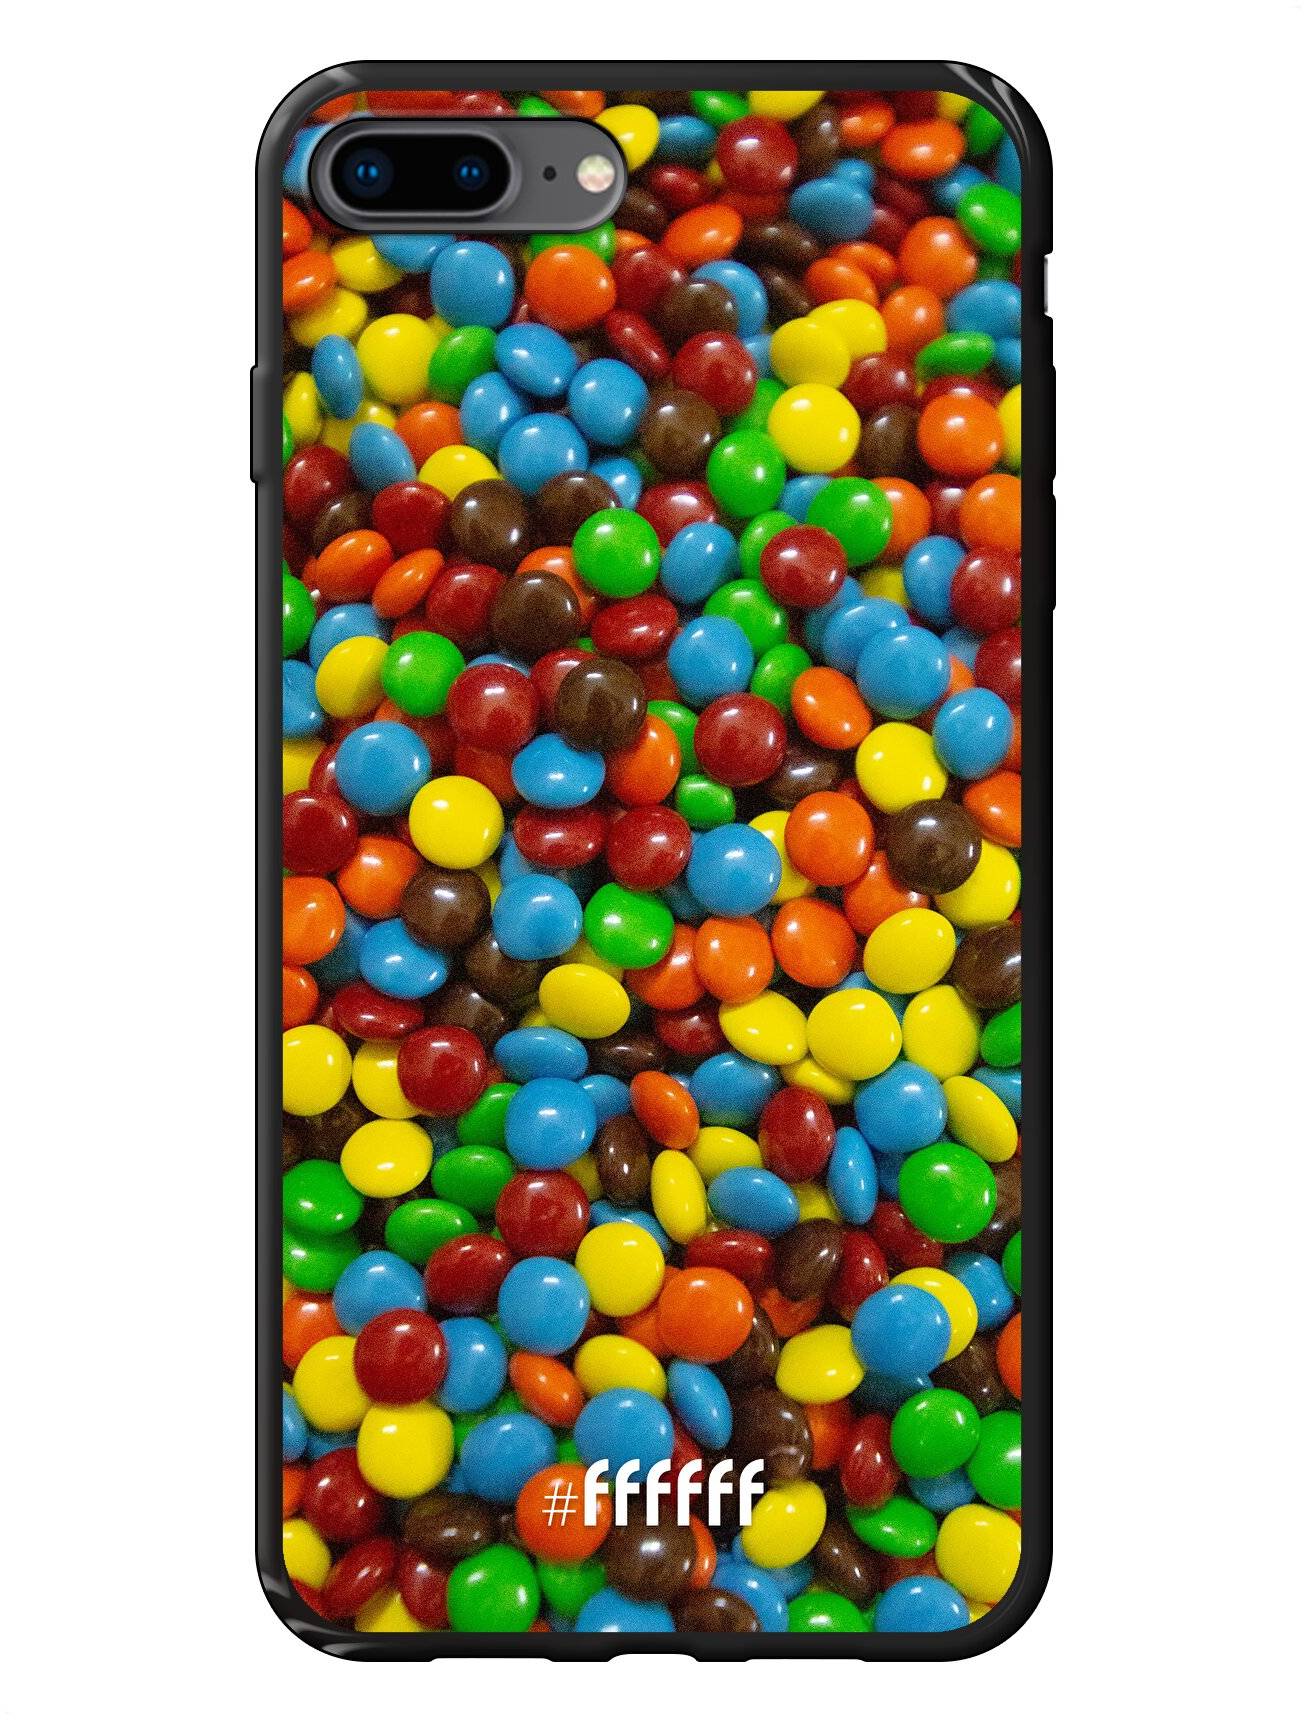 Chocolate Festival iPhone 8 Plus